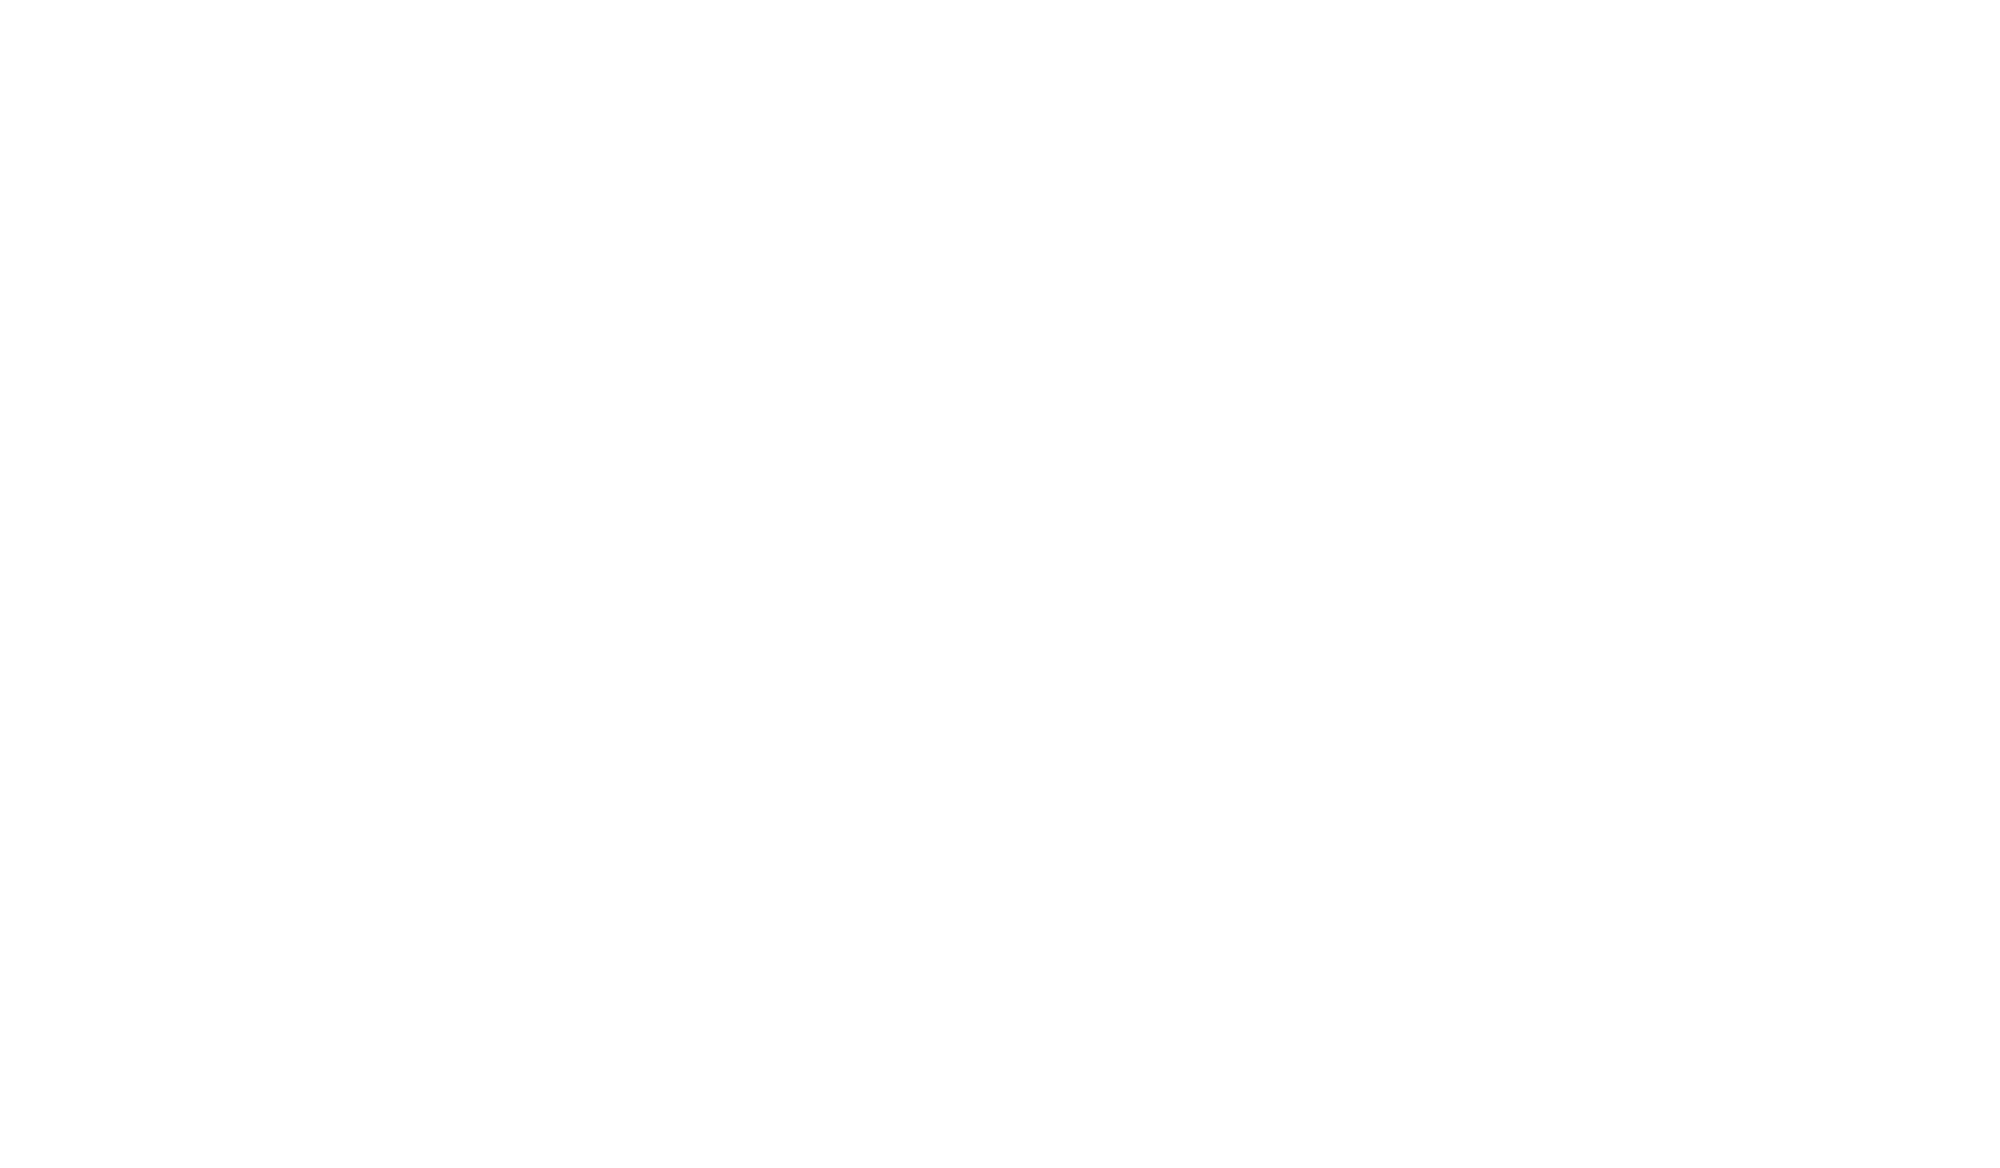 Parel van Rooijen